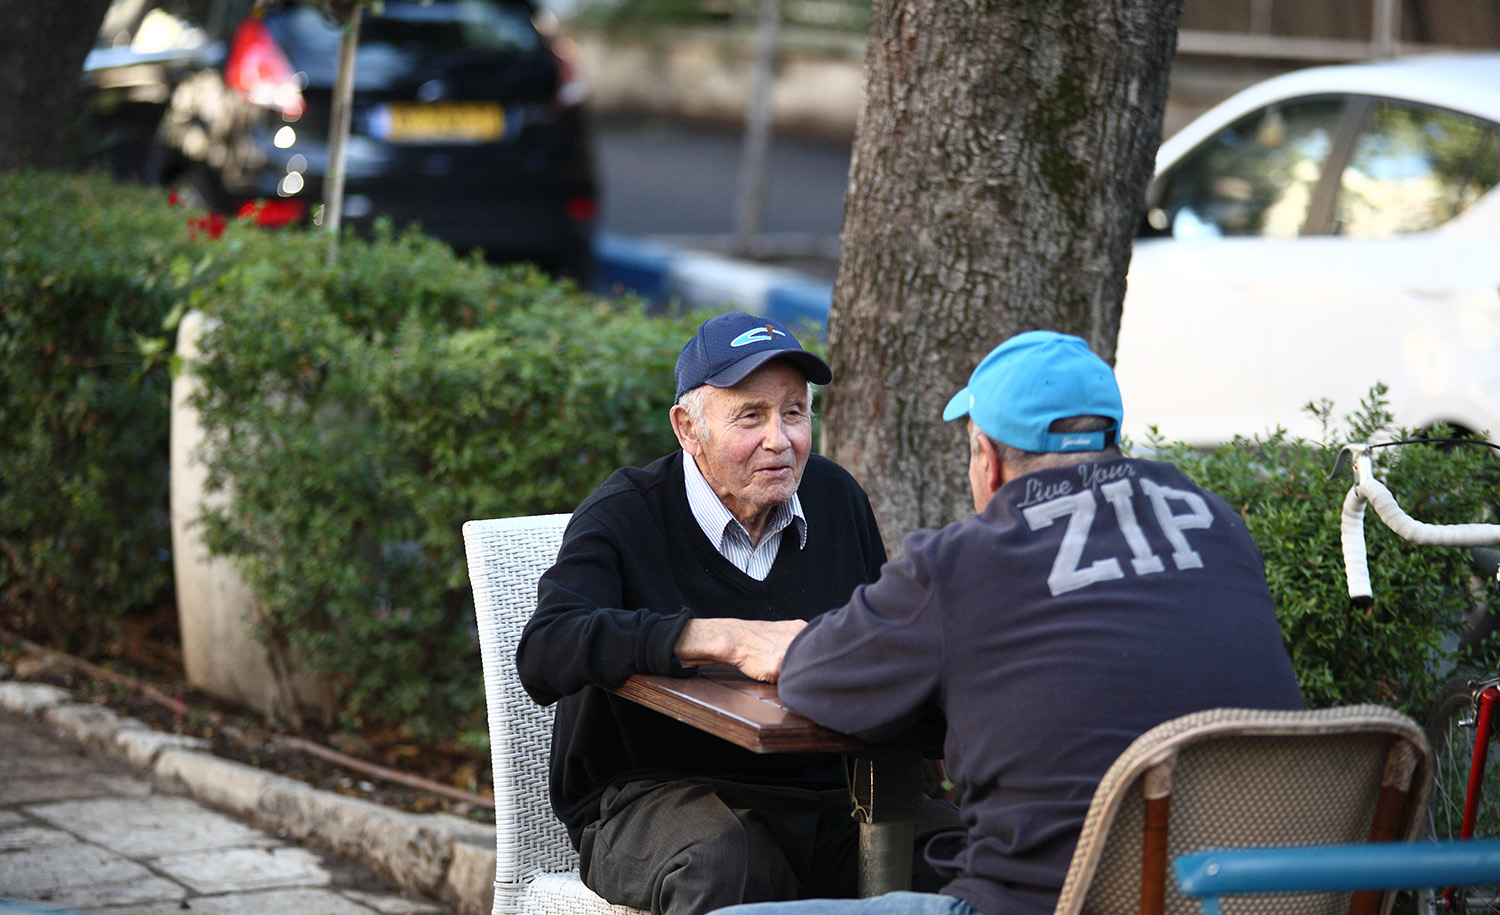 
Two men talking at the Butke Cafe in Jerusalem in 2014. Dan Porges/Getty Images.







